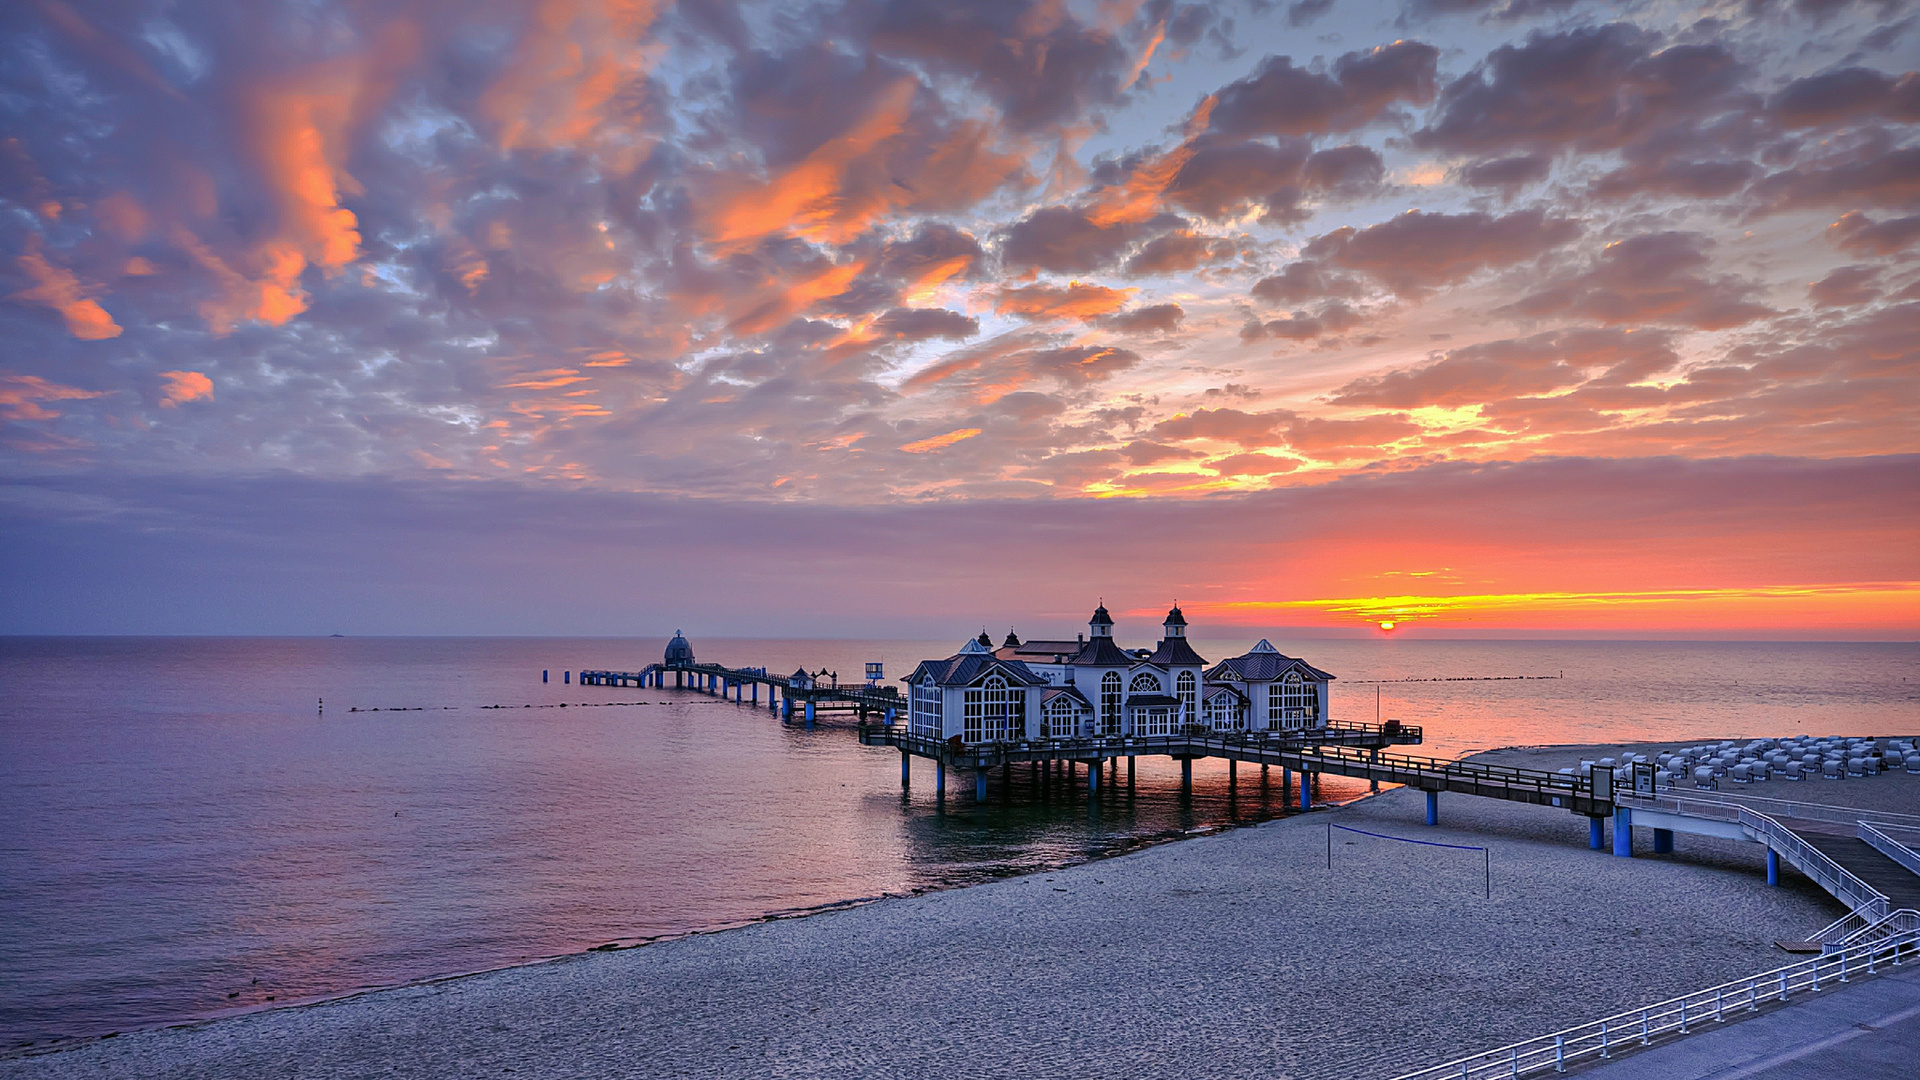 dock, Pier, Buildings, Sunset, Sunrise, Nature, Sky, Clouds, Ocean, Sea Wallpaper